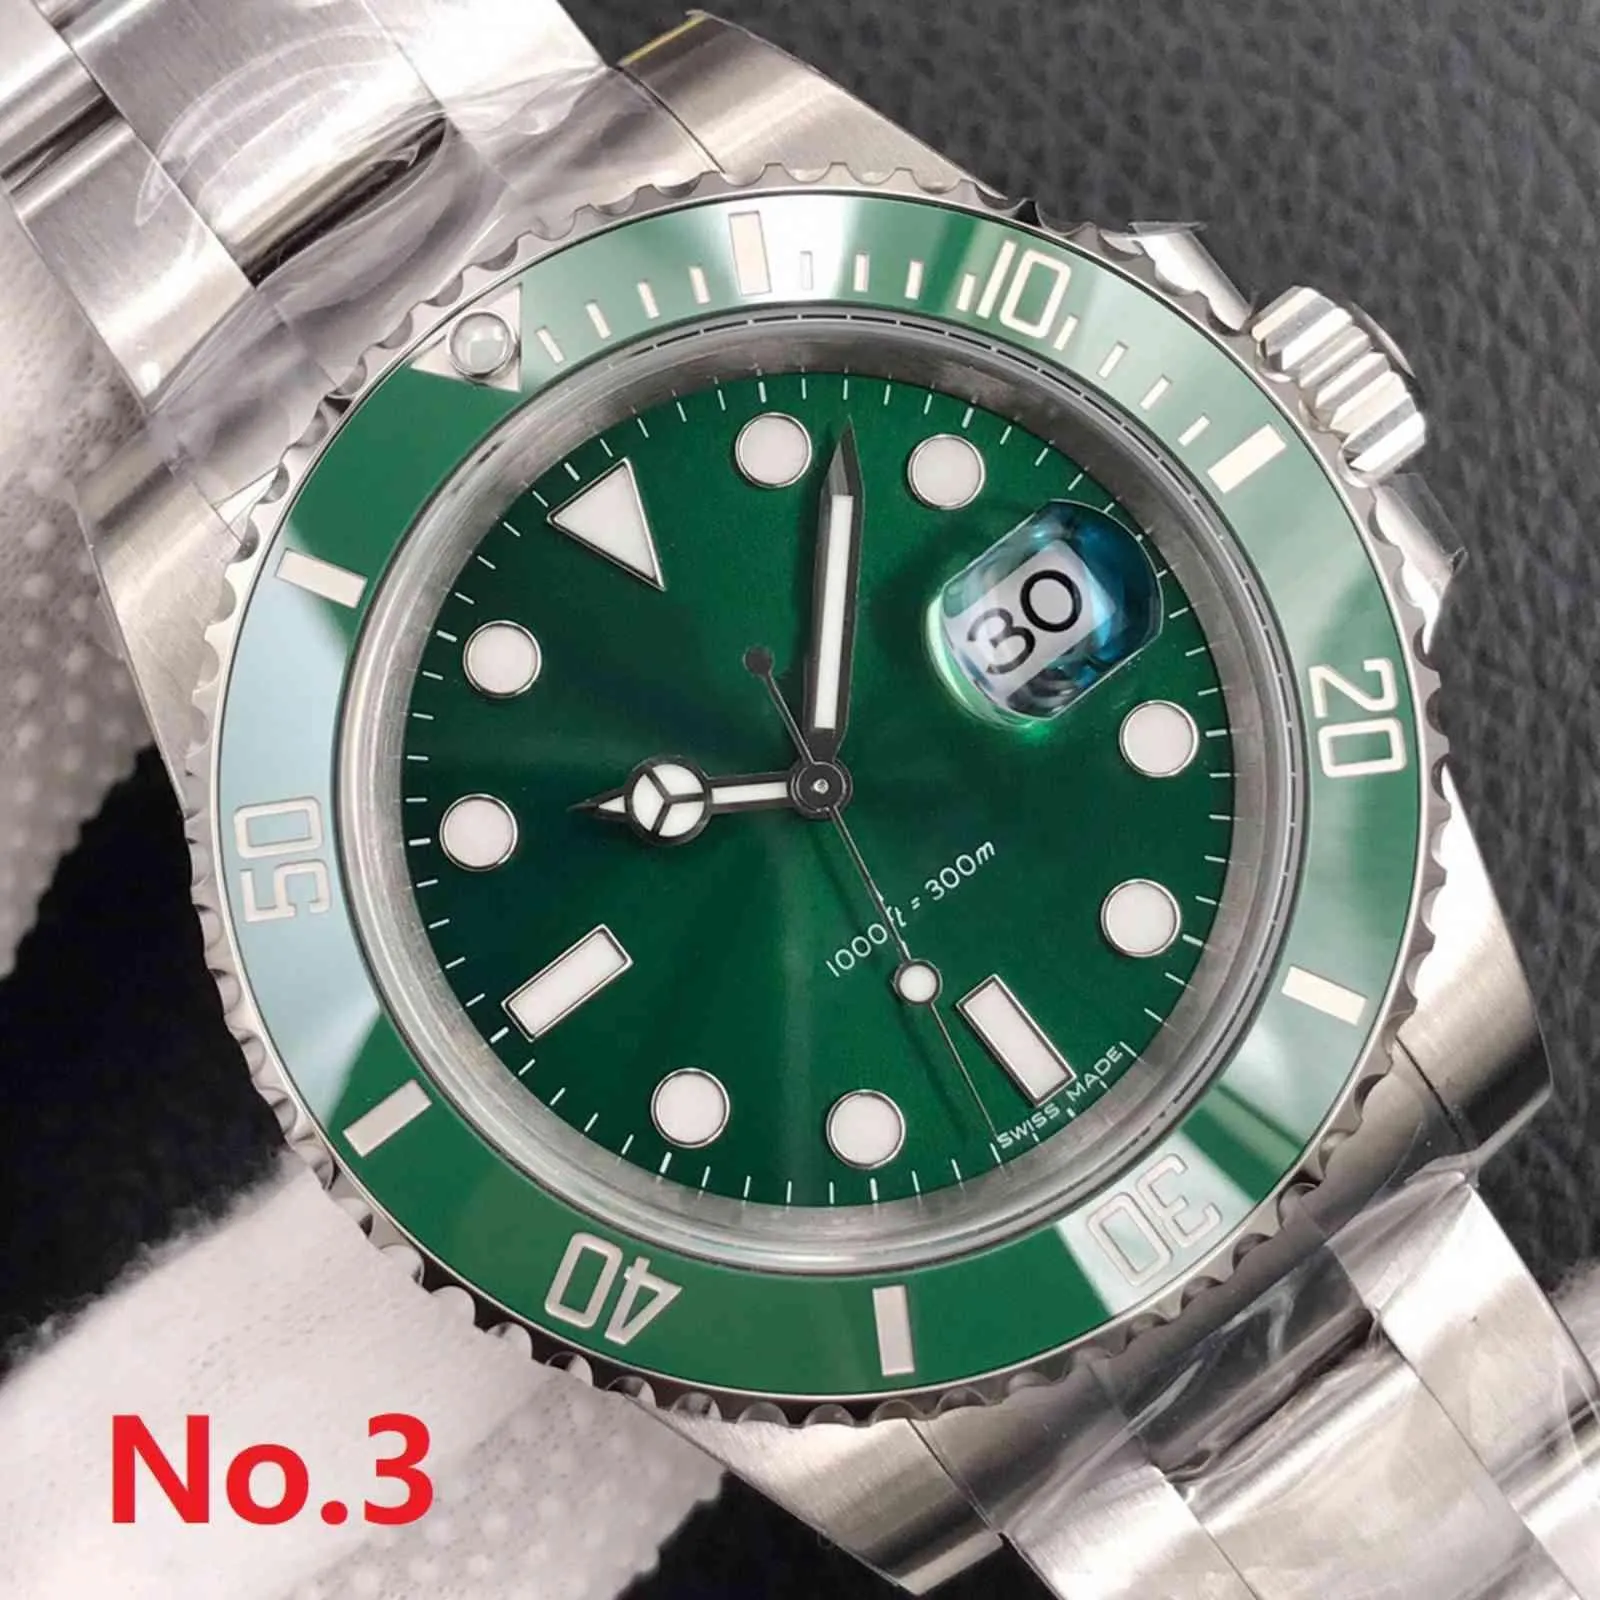 AAAAA – montre automatique pour hommes, marque célèbre, 40mm, cristal saphir, avec boîte verte originale, R1 # 185c, qualité supérieure